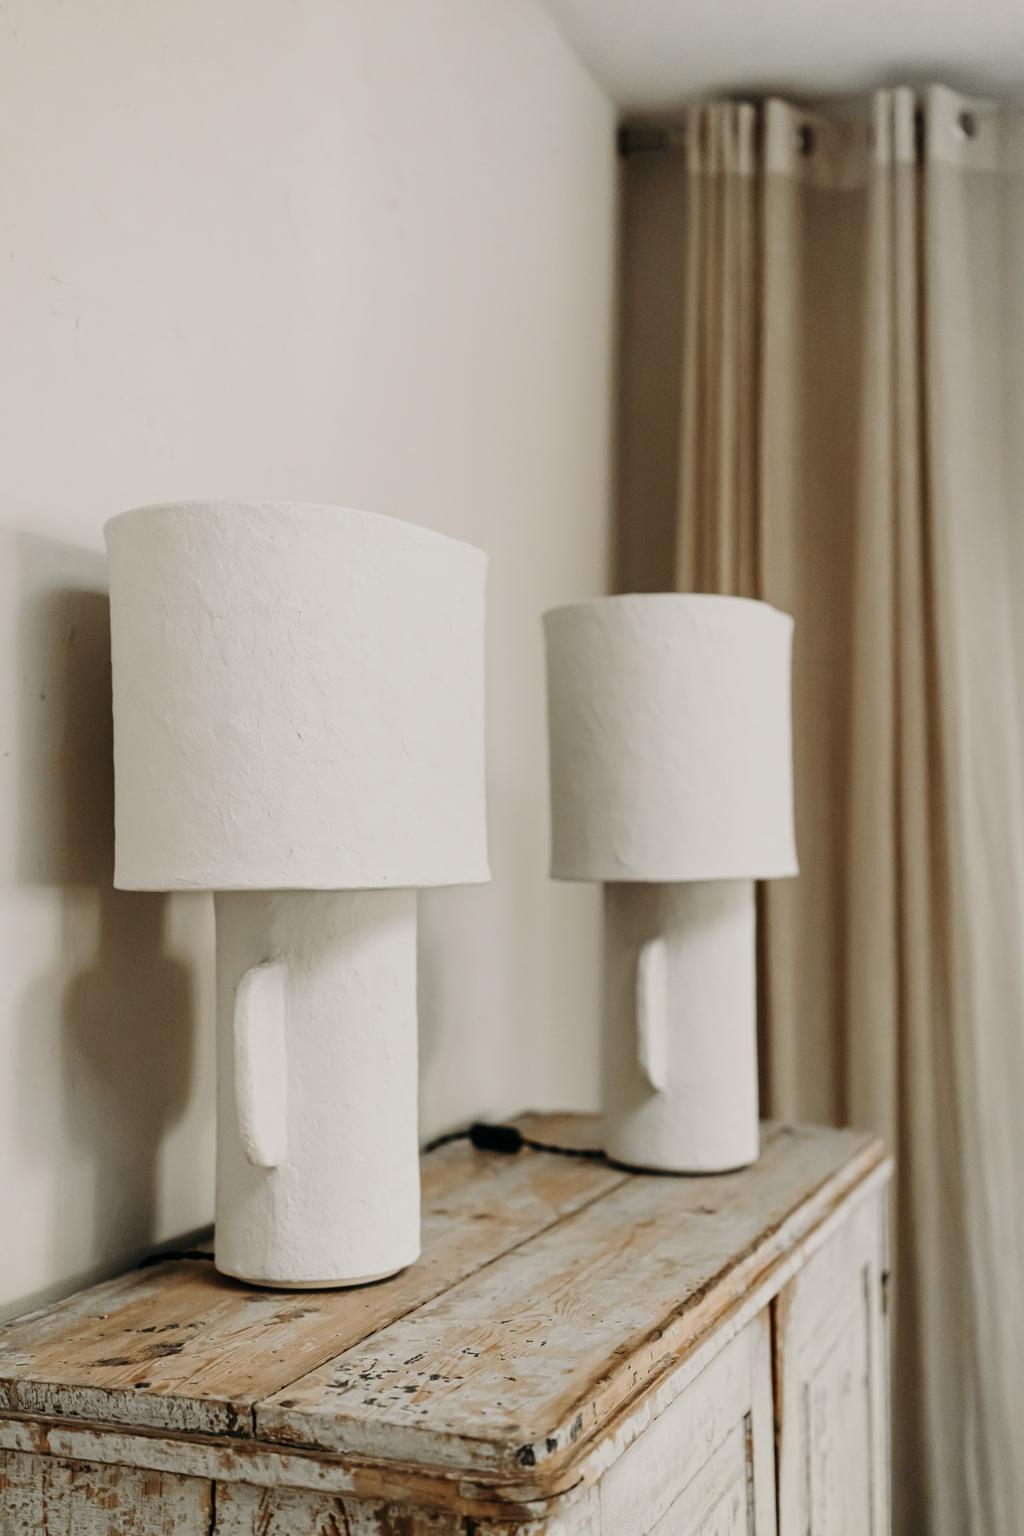 Belgian Pair of White Papier Mâché Table Lamps